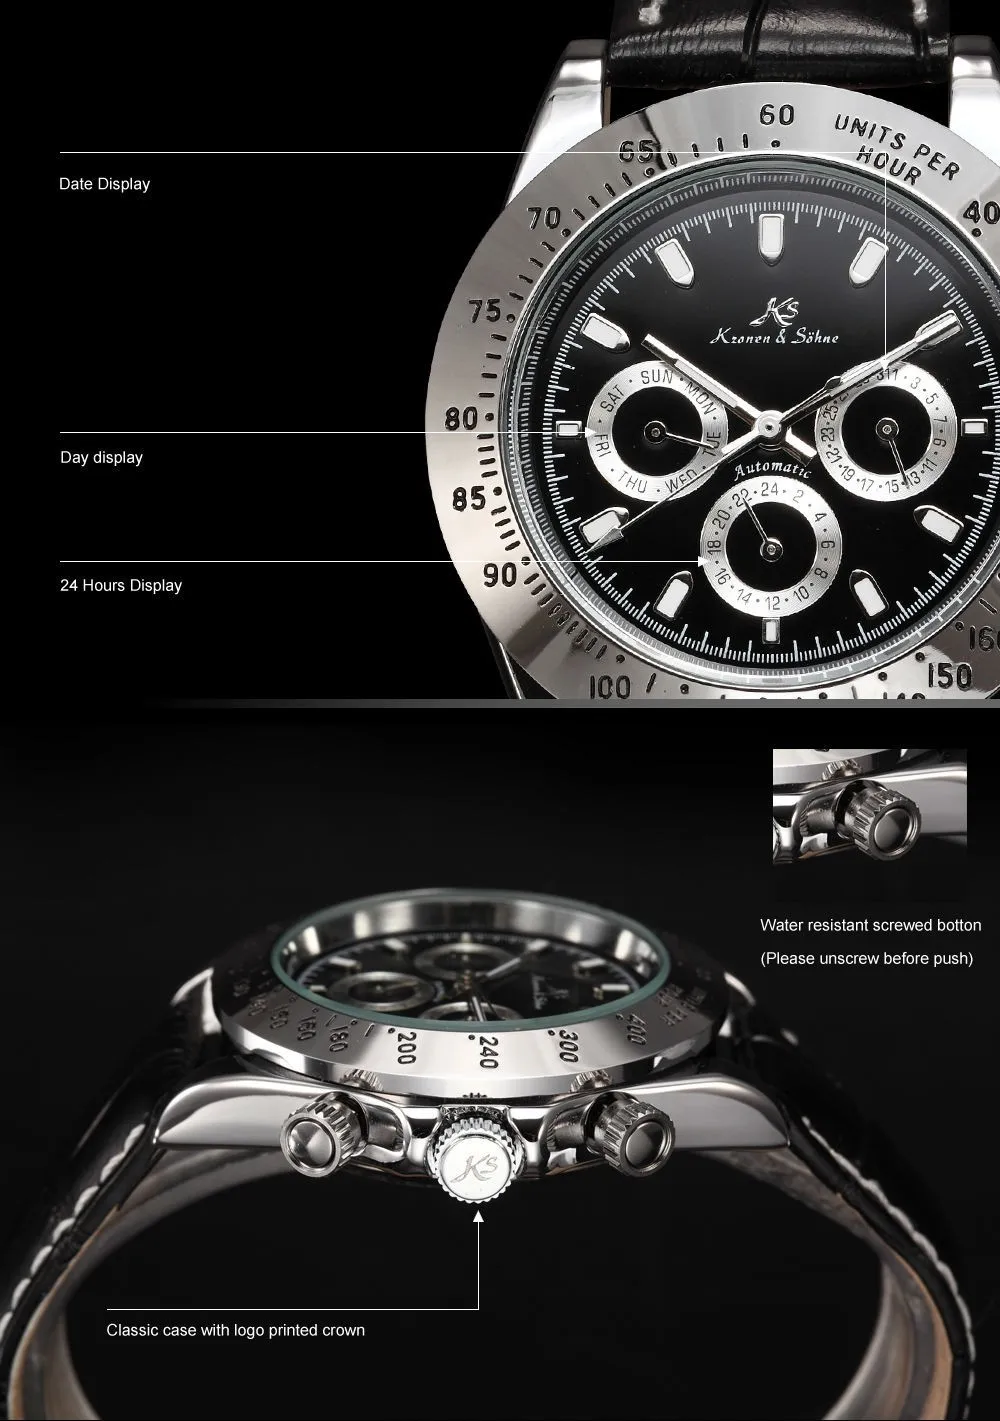 Ks Императорский Календарь день дата дисплей мужские часы Relojes черная кожа полностью стальные автоматические механические часы с автоматическим подзаводом/KS165